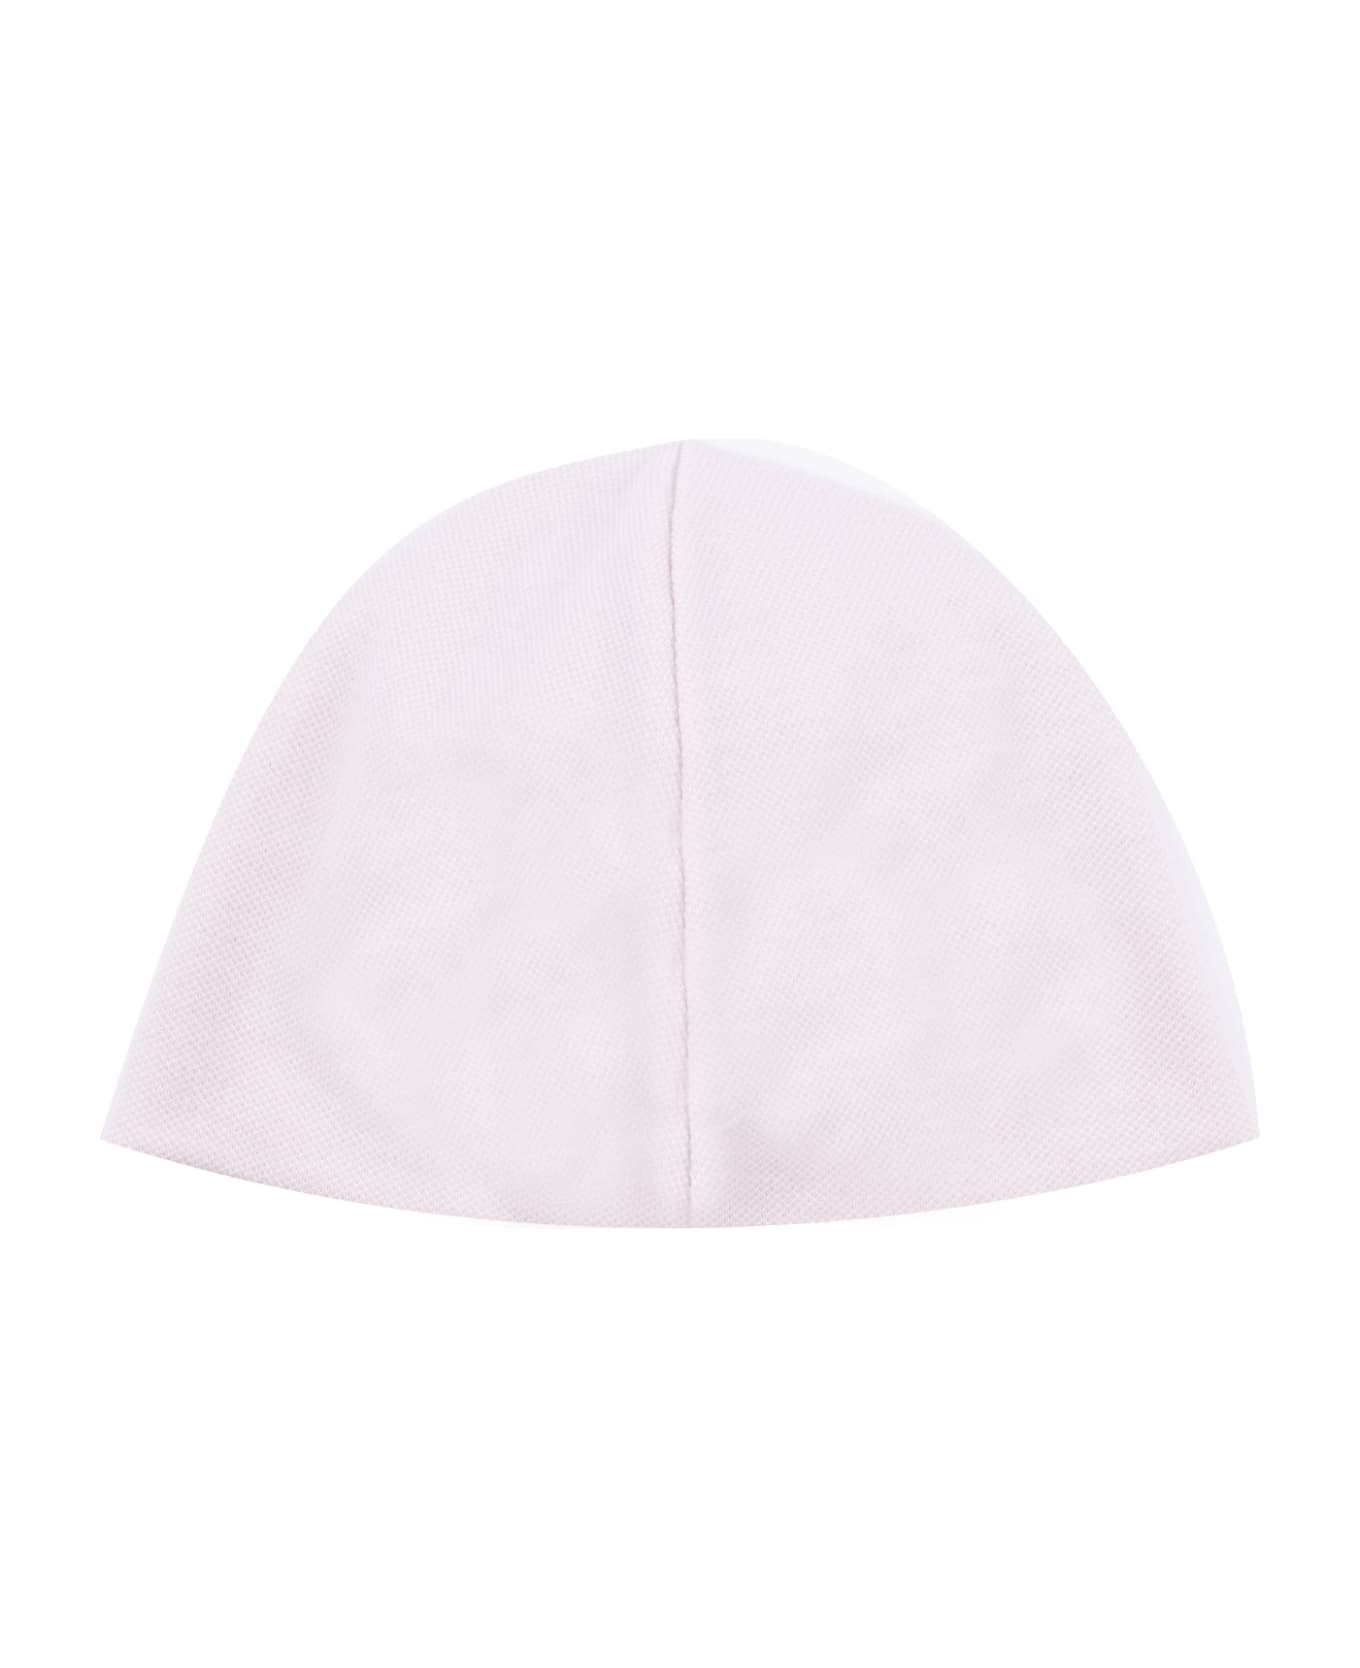 La stupenderia Cotton Hat - White